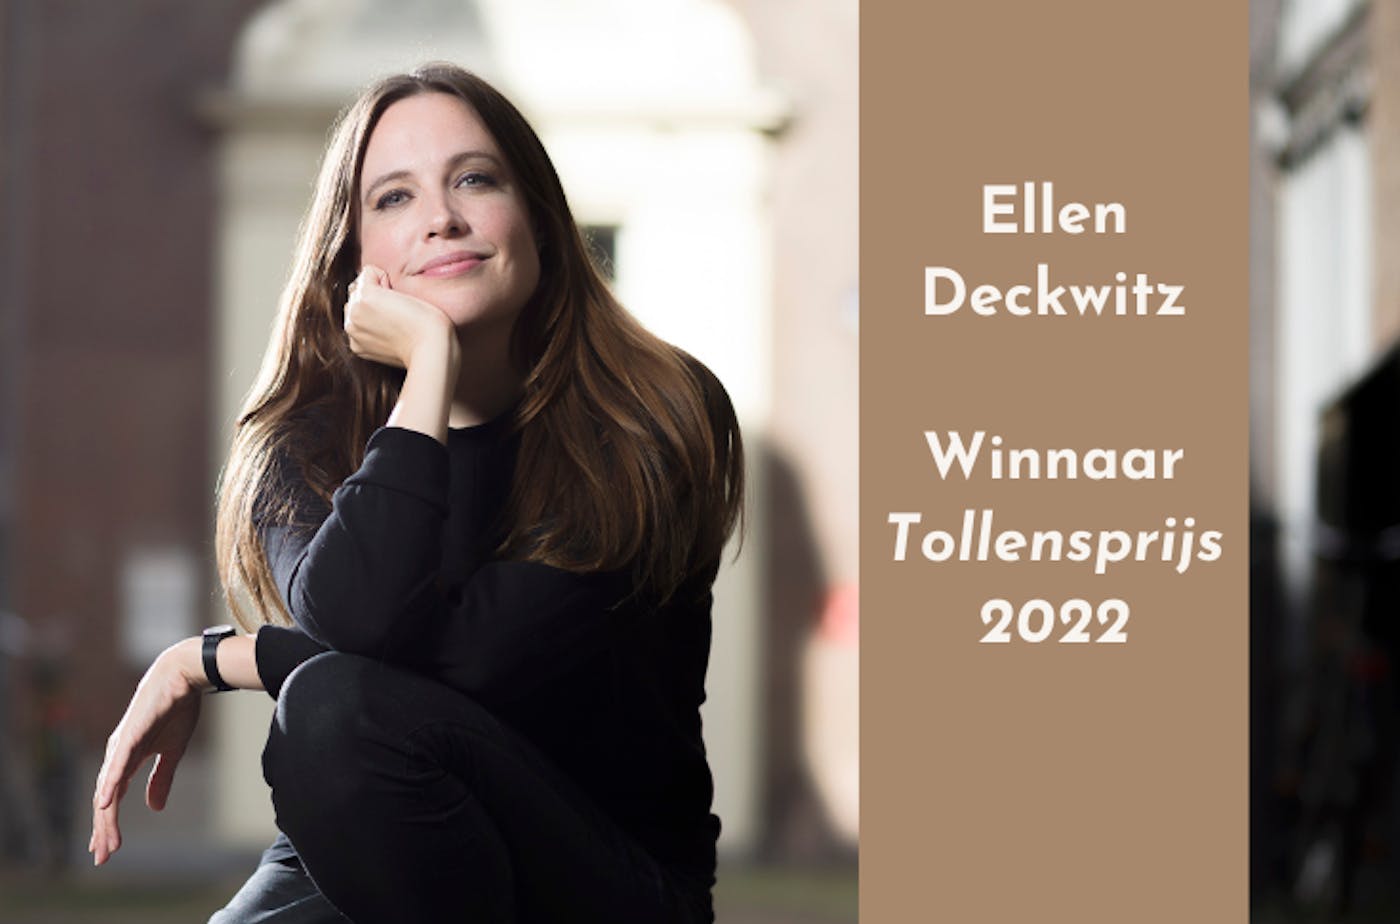 Ellen Deckwitz wint Tollensprijs 2022